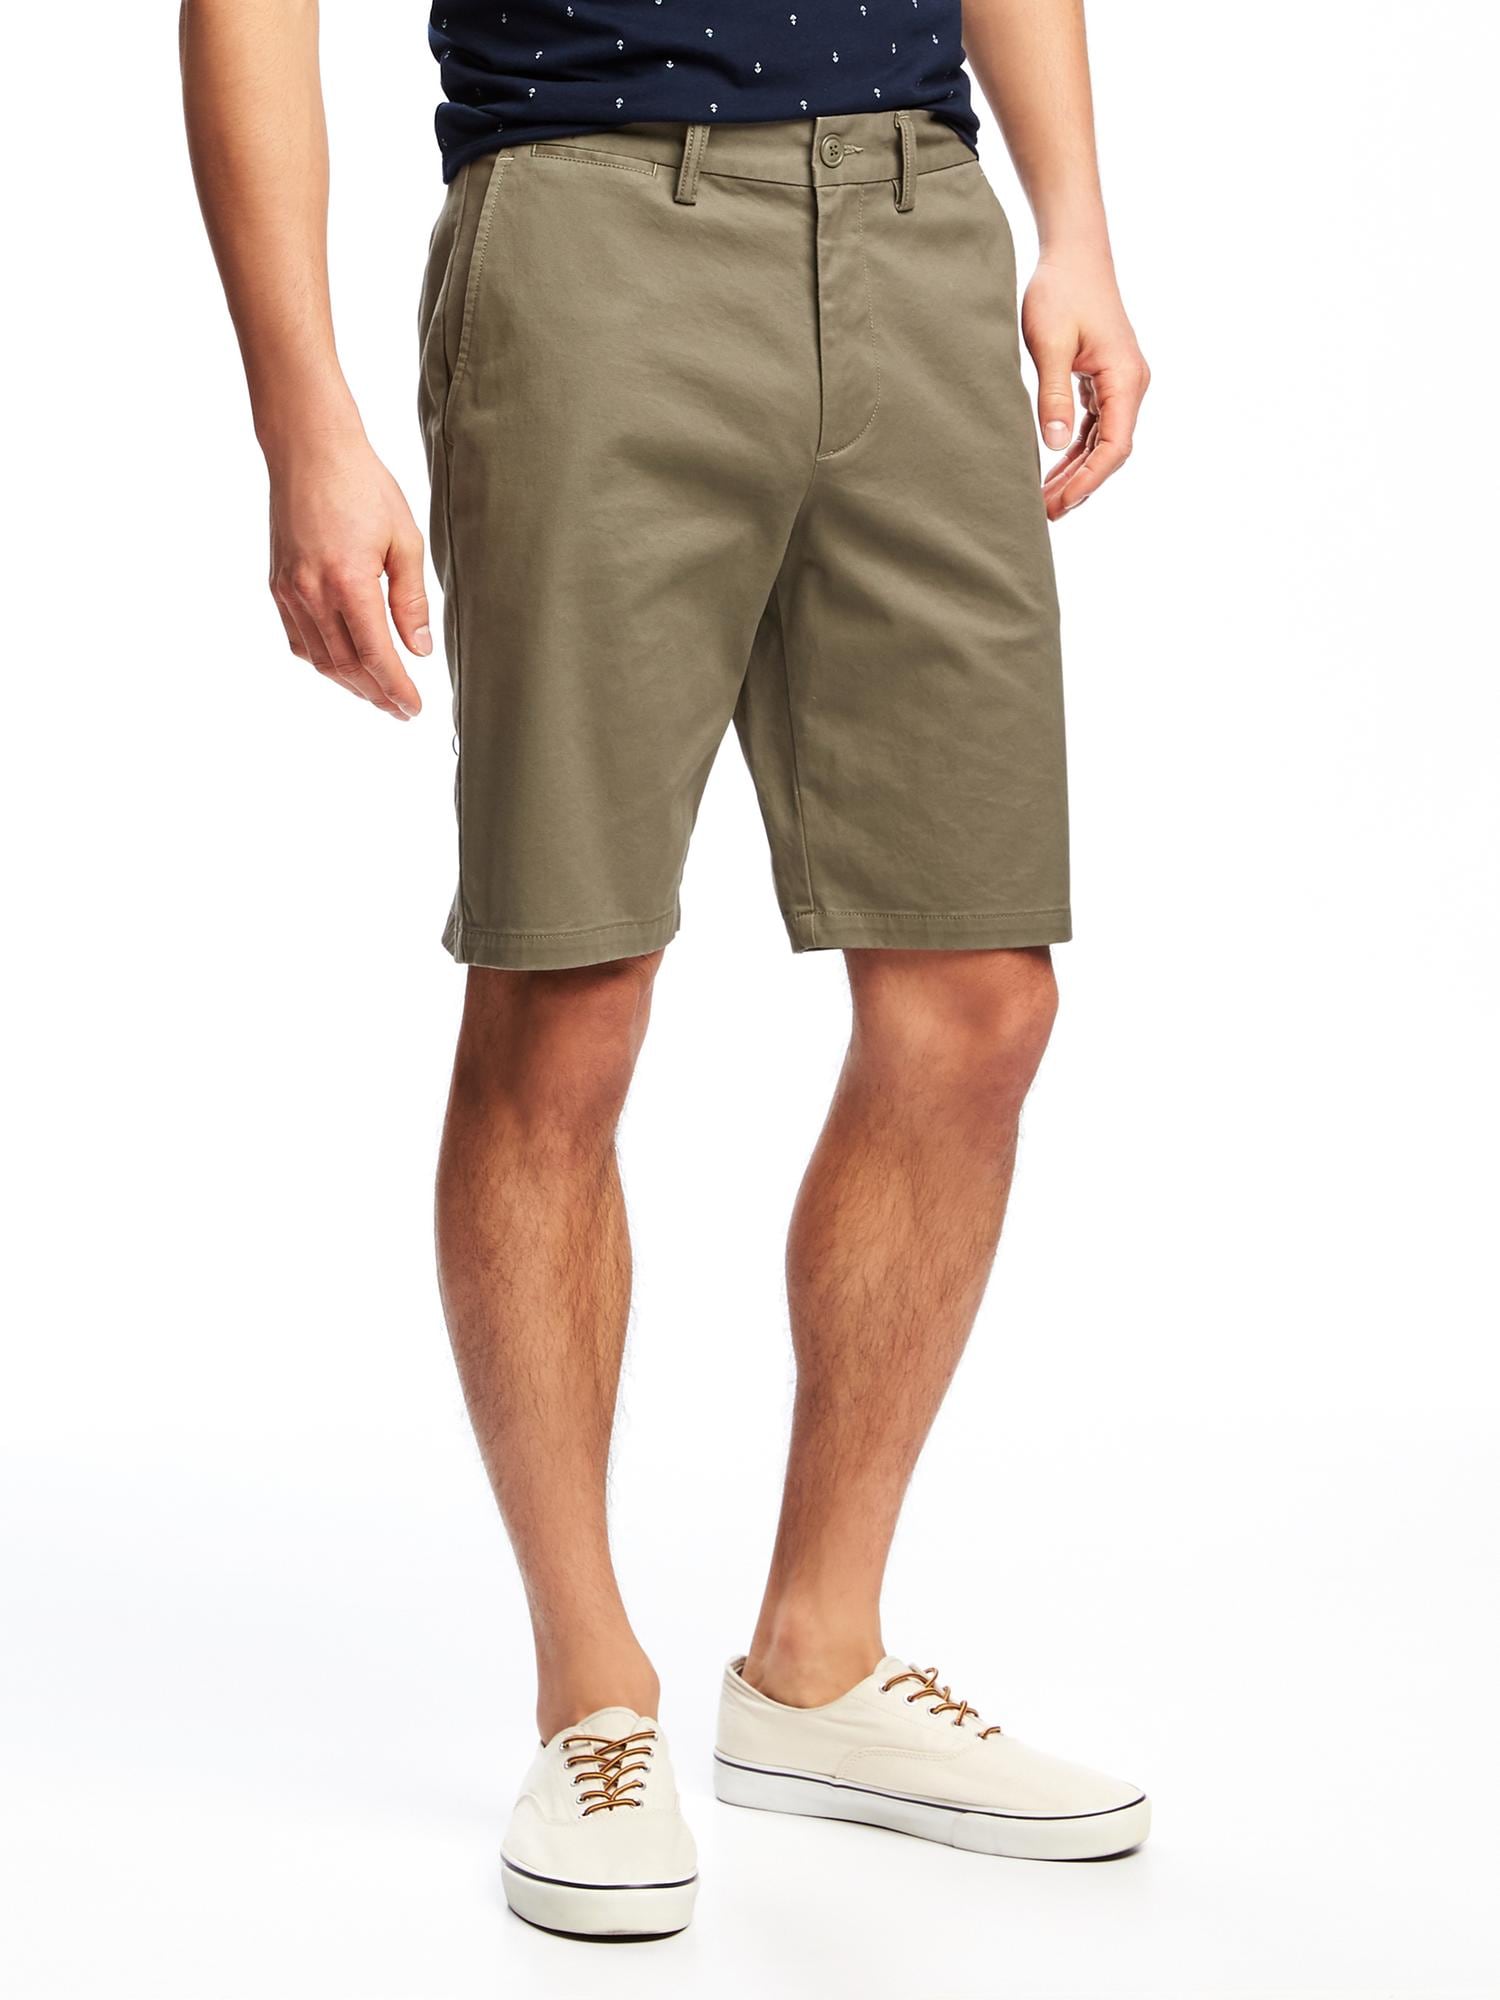 Slim Built-In Flex Ultimate Khaki Shorts for Men (10